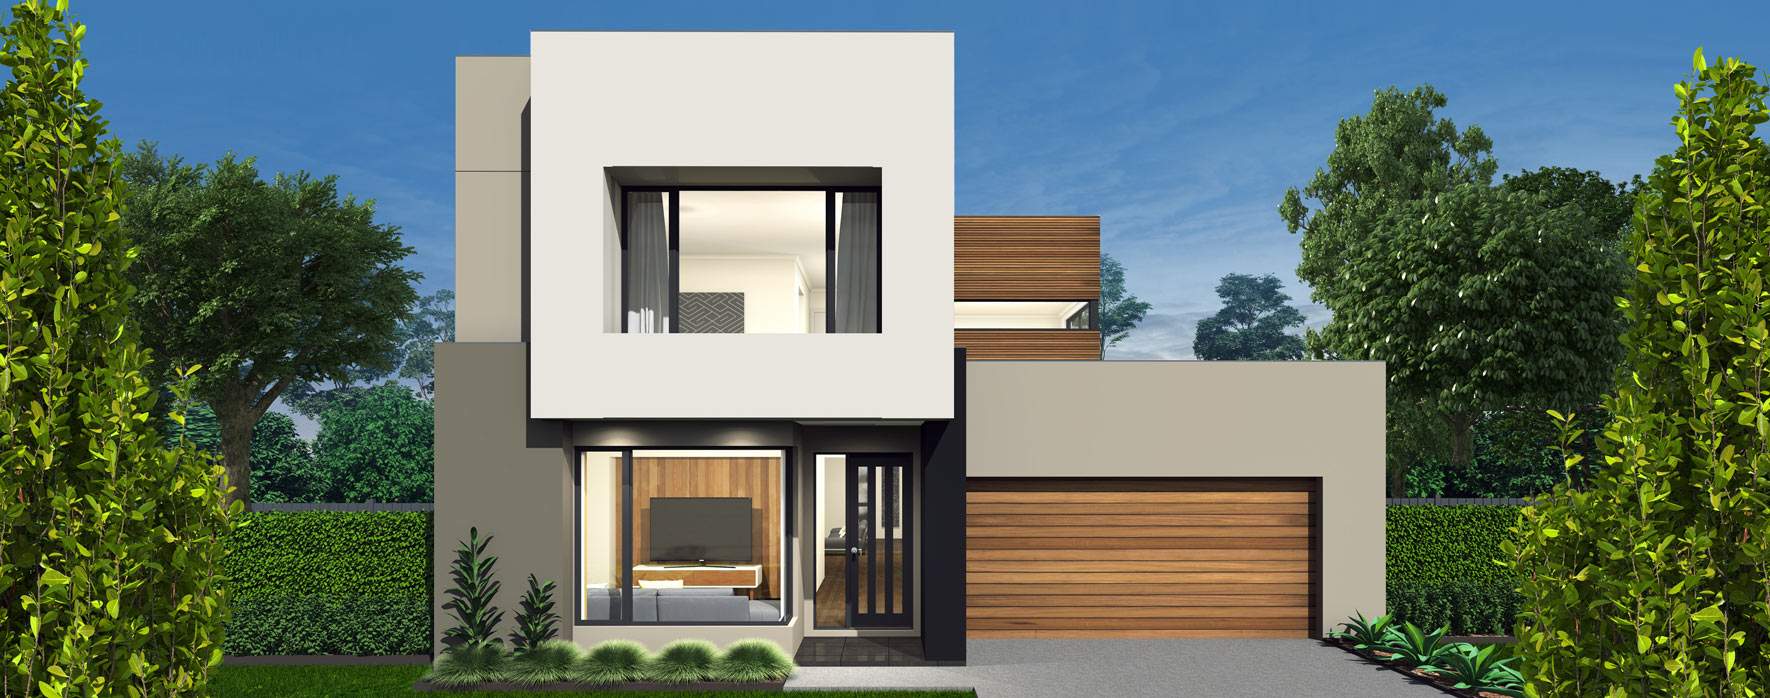 zumba-26-double-storey-house-design-luxe-facade-header.jpg